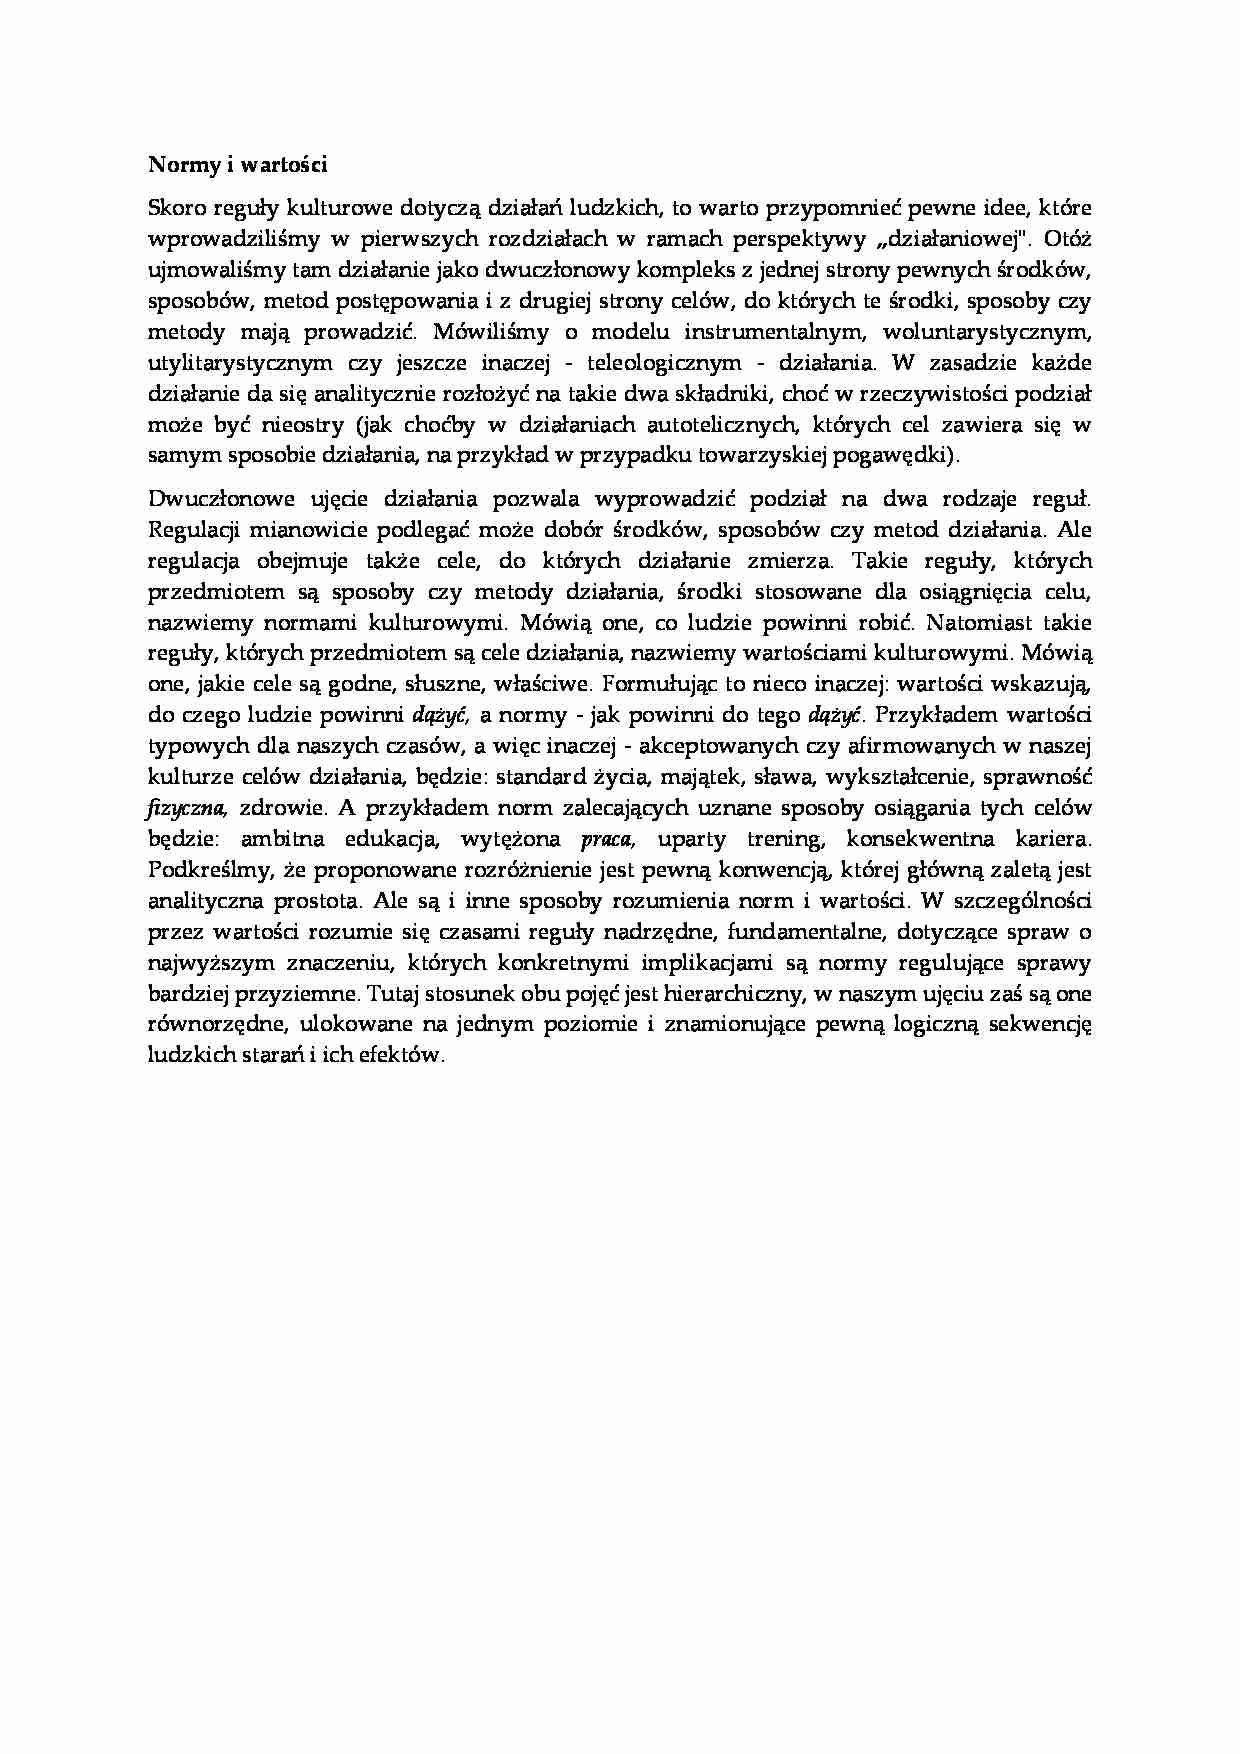 Normy i wartości - socjologia - strona 1